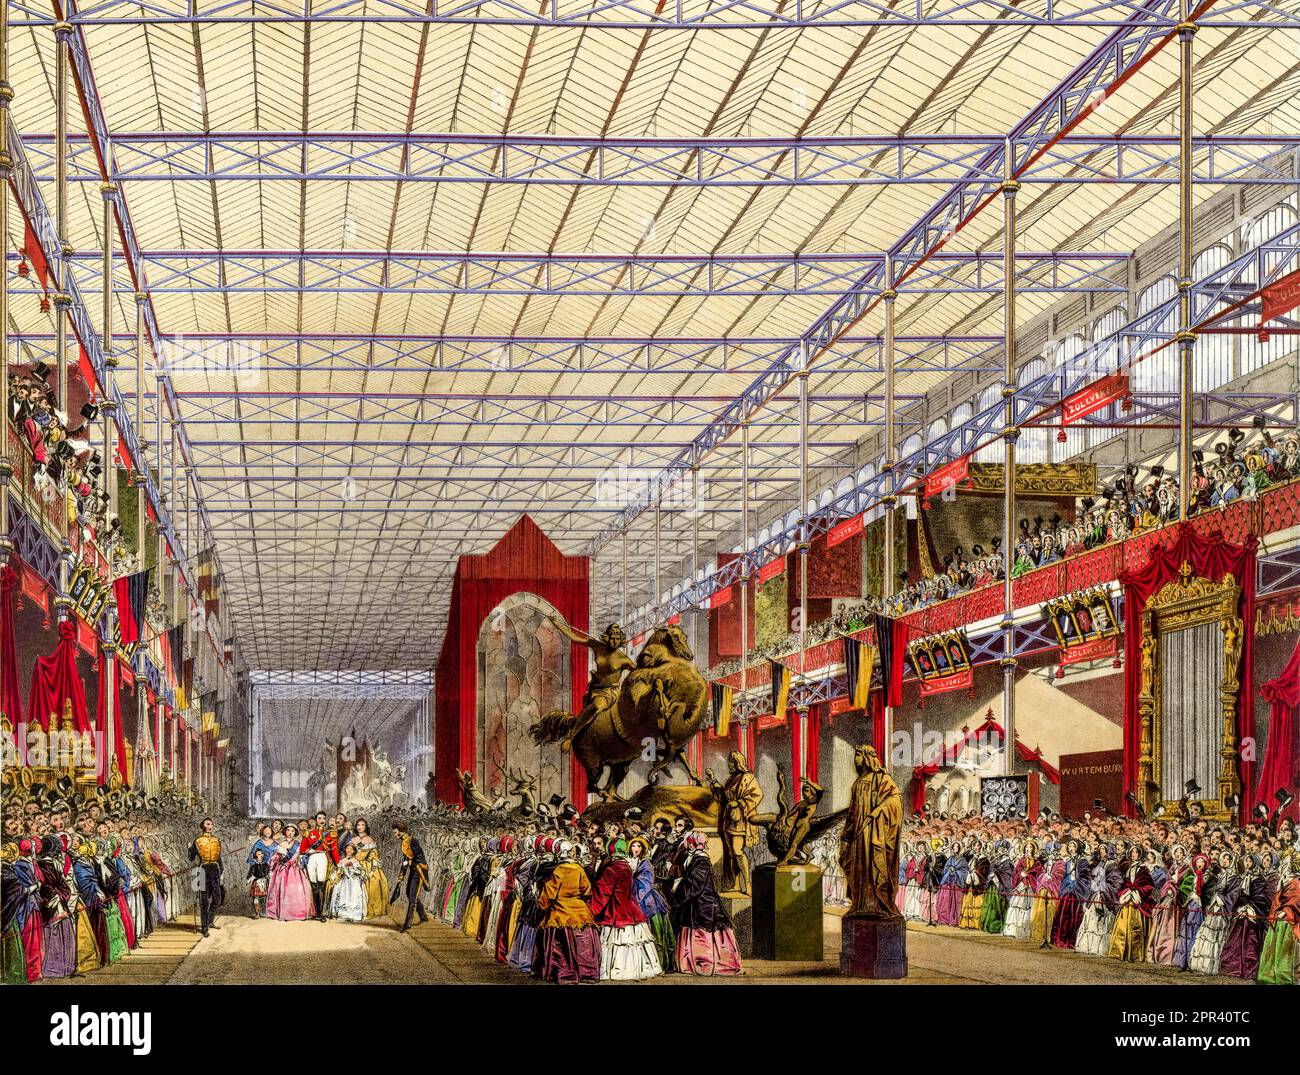 La reine Victoria et le prince Albert visitant la nef étrangère de la Grande exposition 1851 à l'intérieur du Crystal Palace, Londres, Angleterre, illustration par Joseph Nash, 1854 Banque D'Images